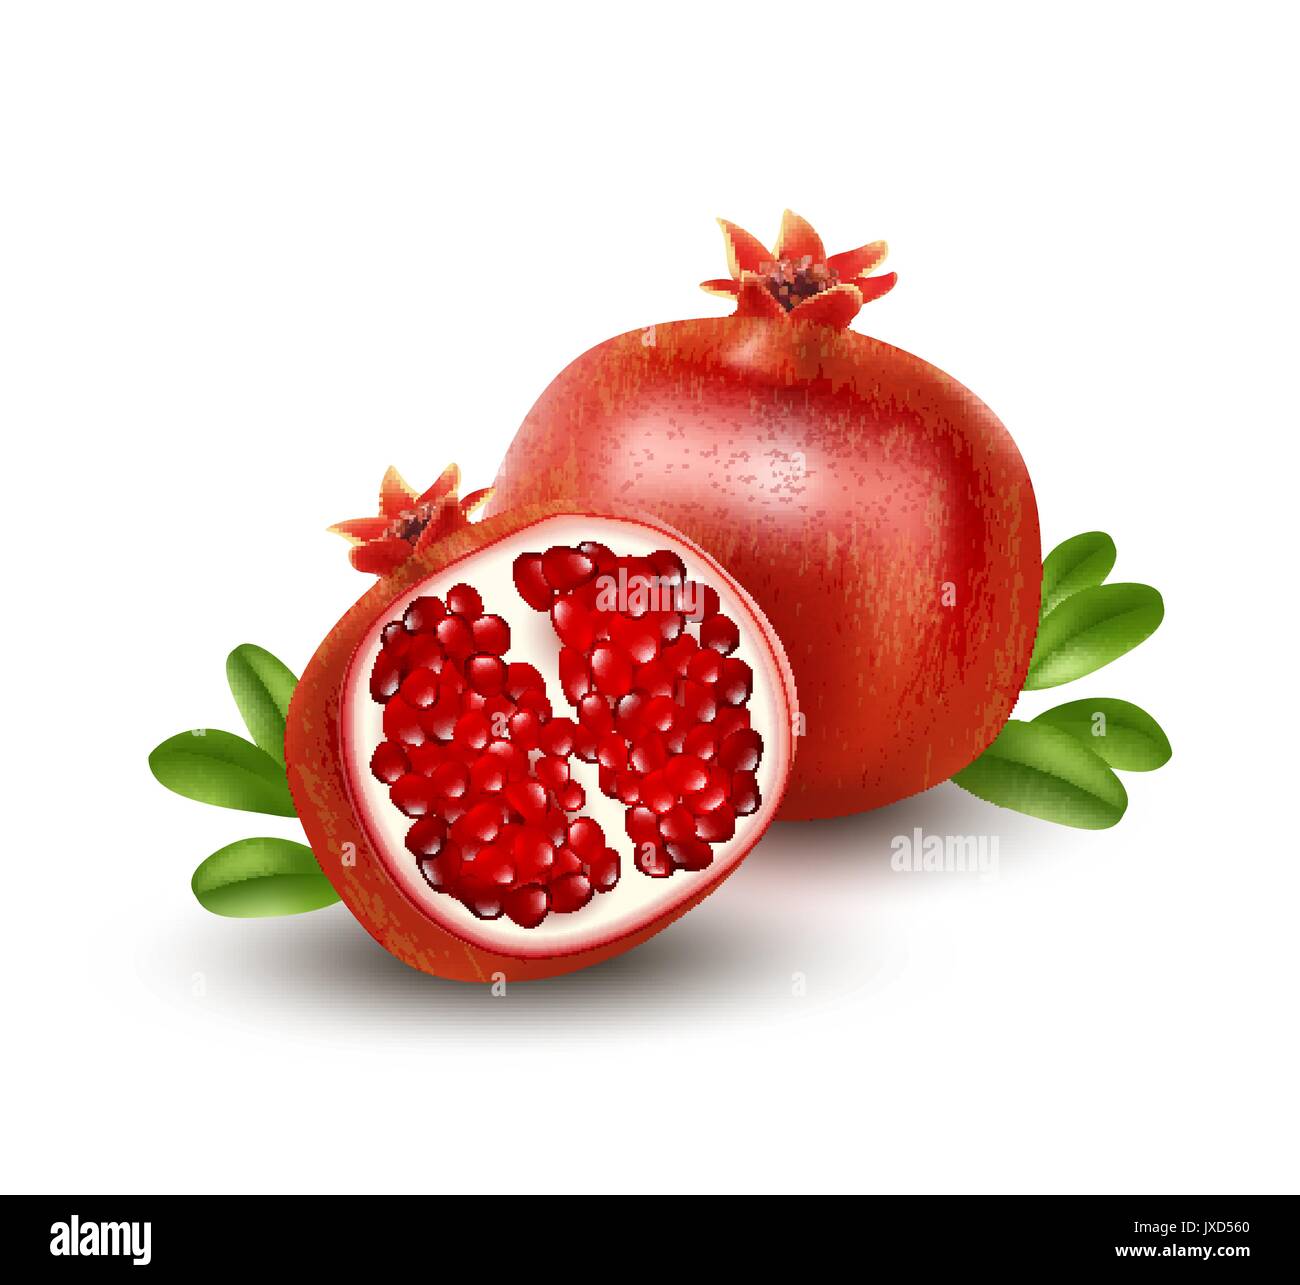 Realistische Granatapfel oder Garnet auf dem weißen Hintergrund. Vector Illustration Stock Vektor